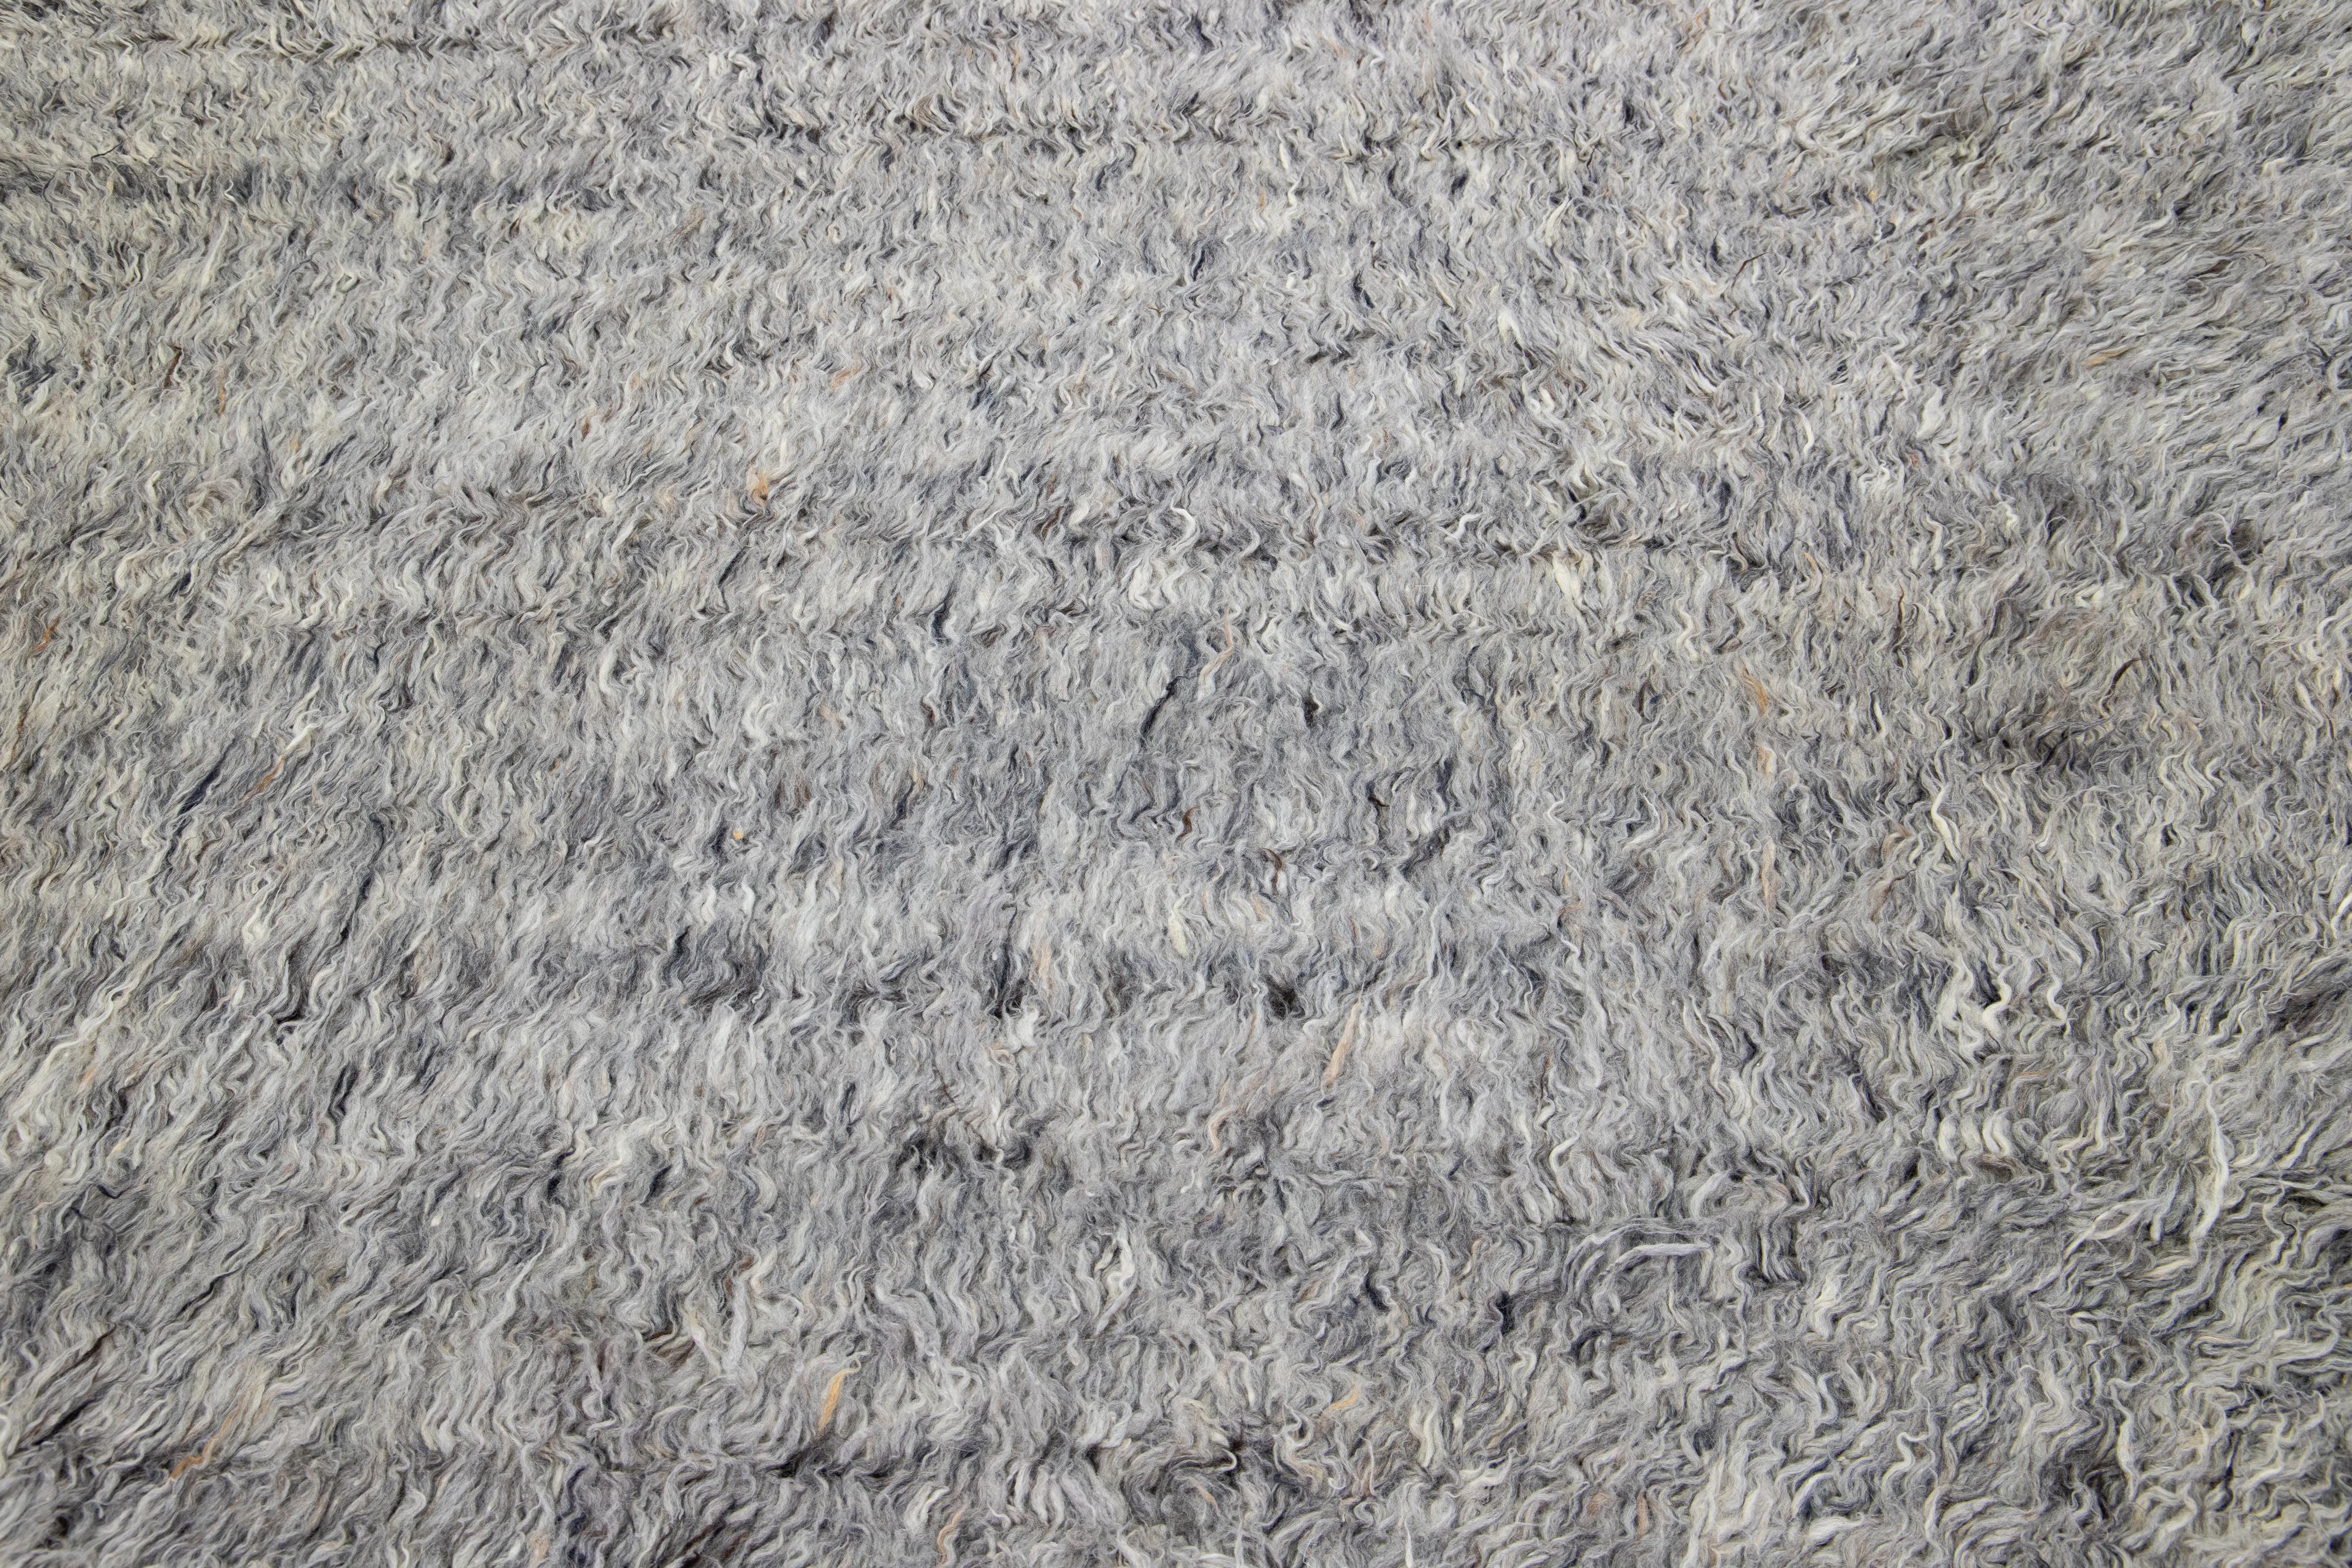 Dieser handgeknüpfte Teppich aus Bio-Wolle hat einen schicken marokkanischen Stil. Es zeigt einen spannenden Hintergrund in Grautönen.

Dieser Teppich misst 8'2' x 10'3